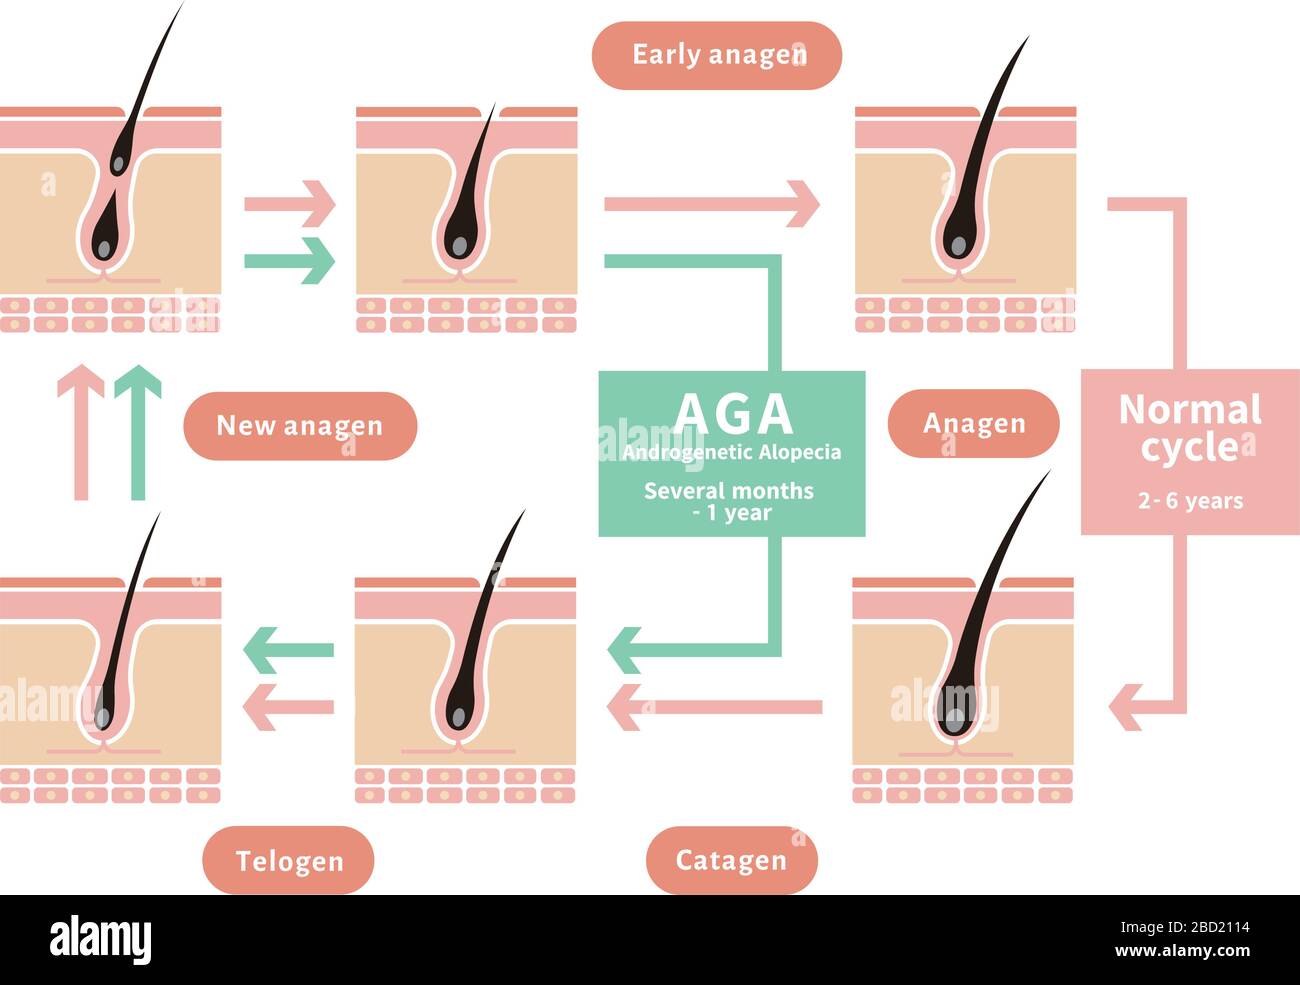 Vergleichende Darstellung des normalen Haarzyklus und der AGA (androgenetische Alopezie) Stock Vektor